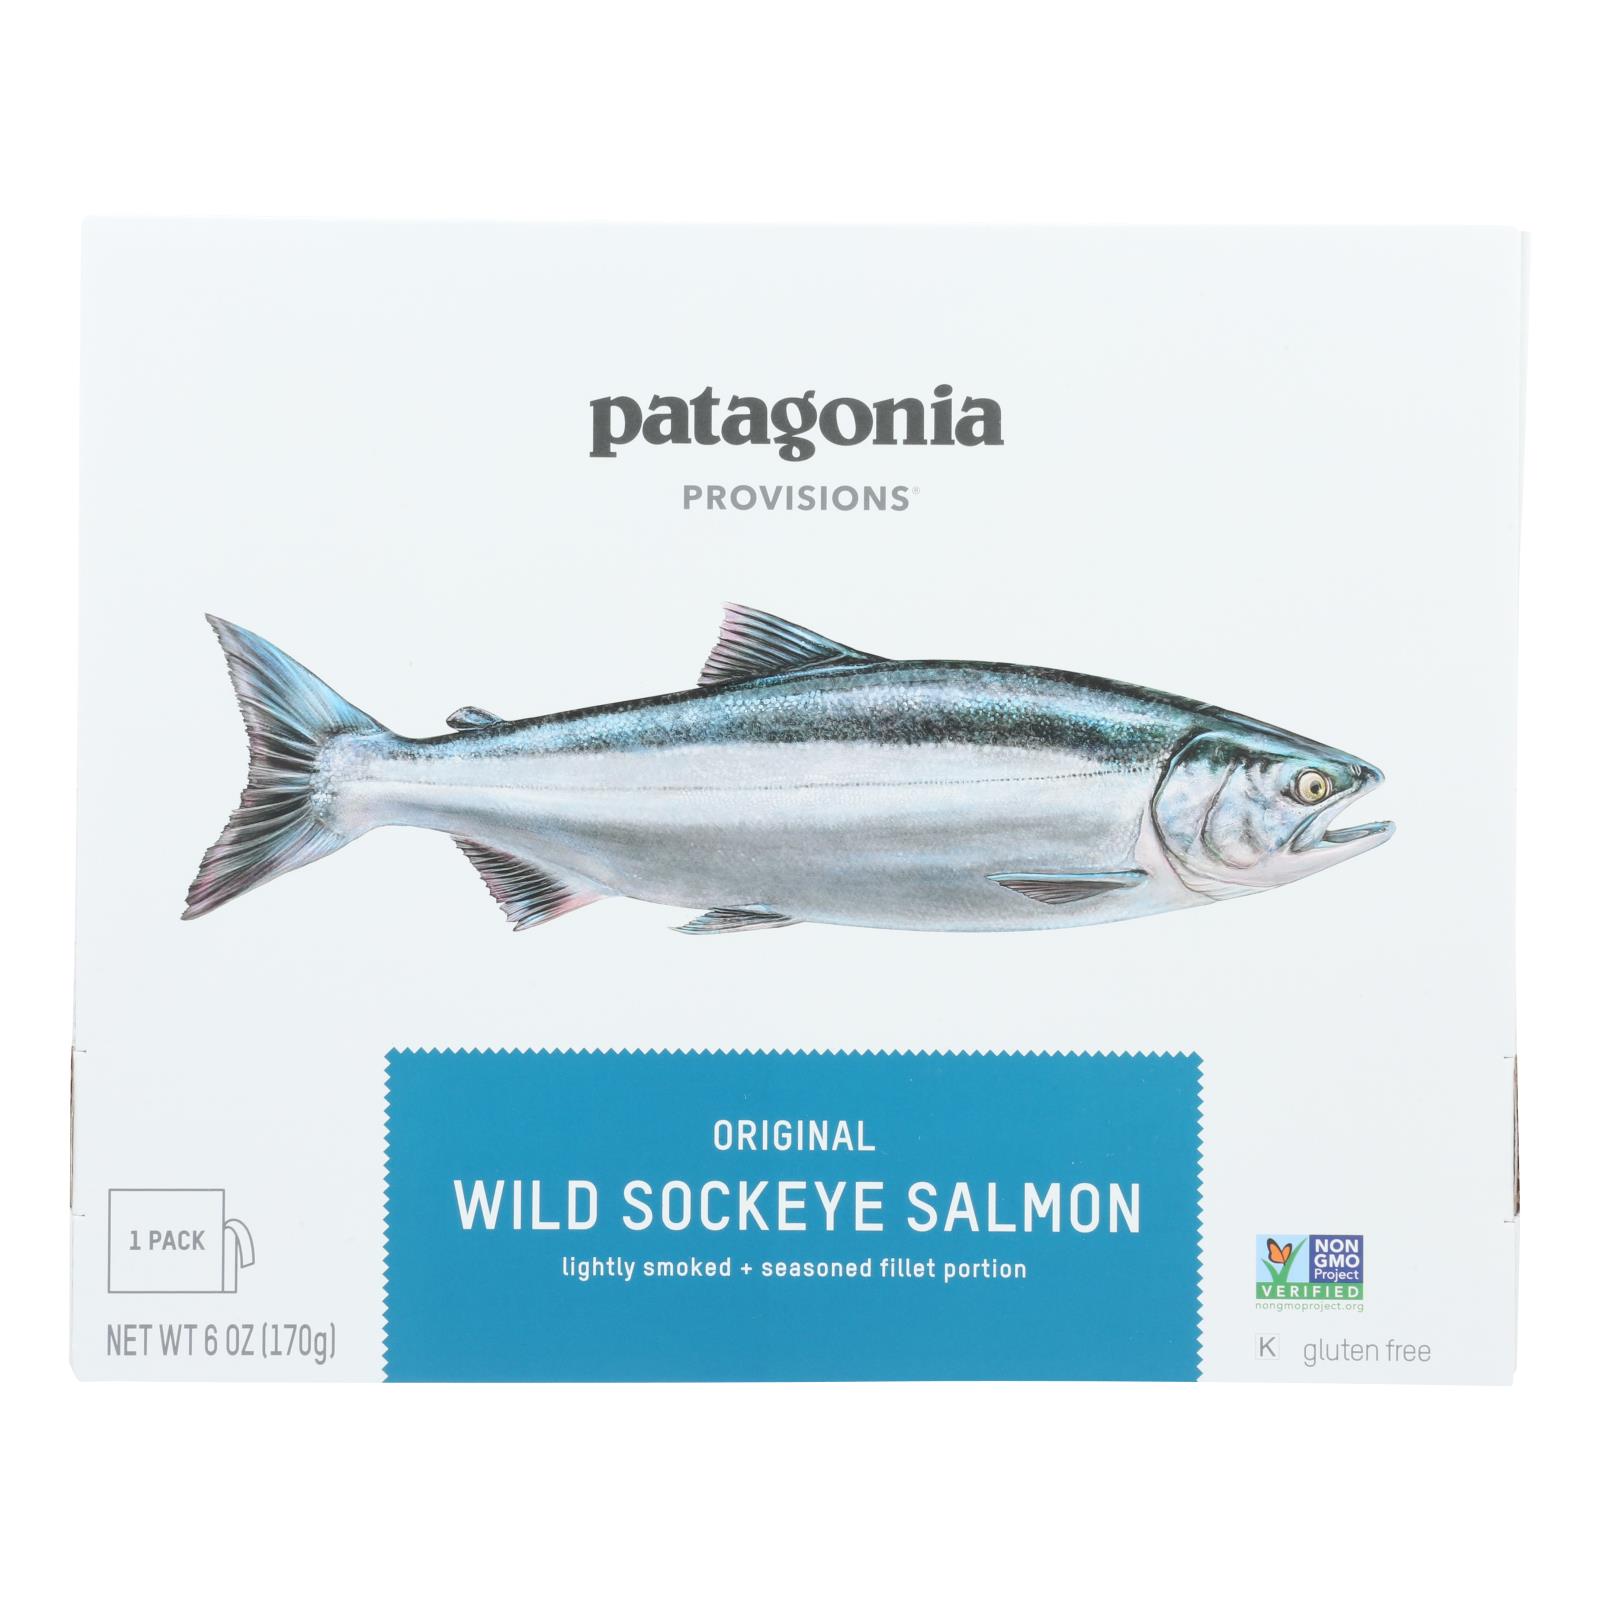 Patagonia - Salmon Wild Sockeye - Case of 12 - 6 OZ